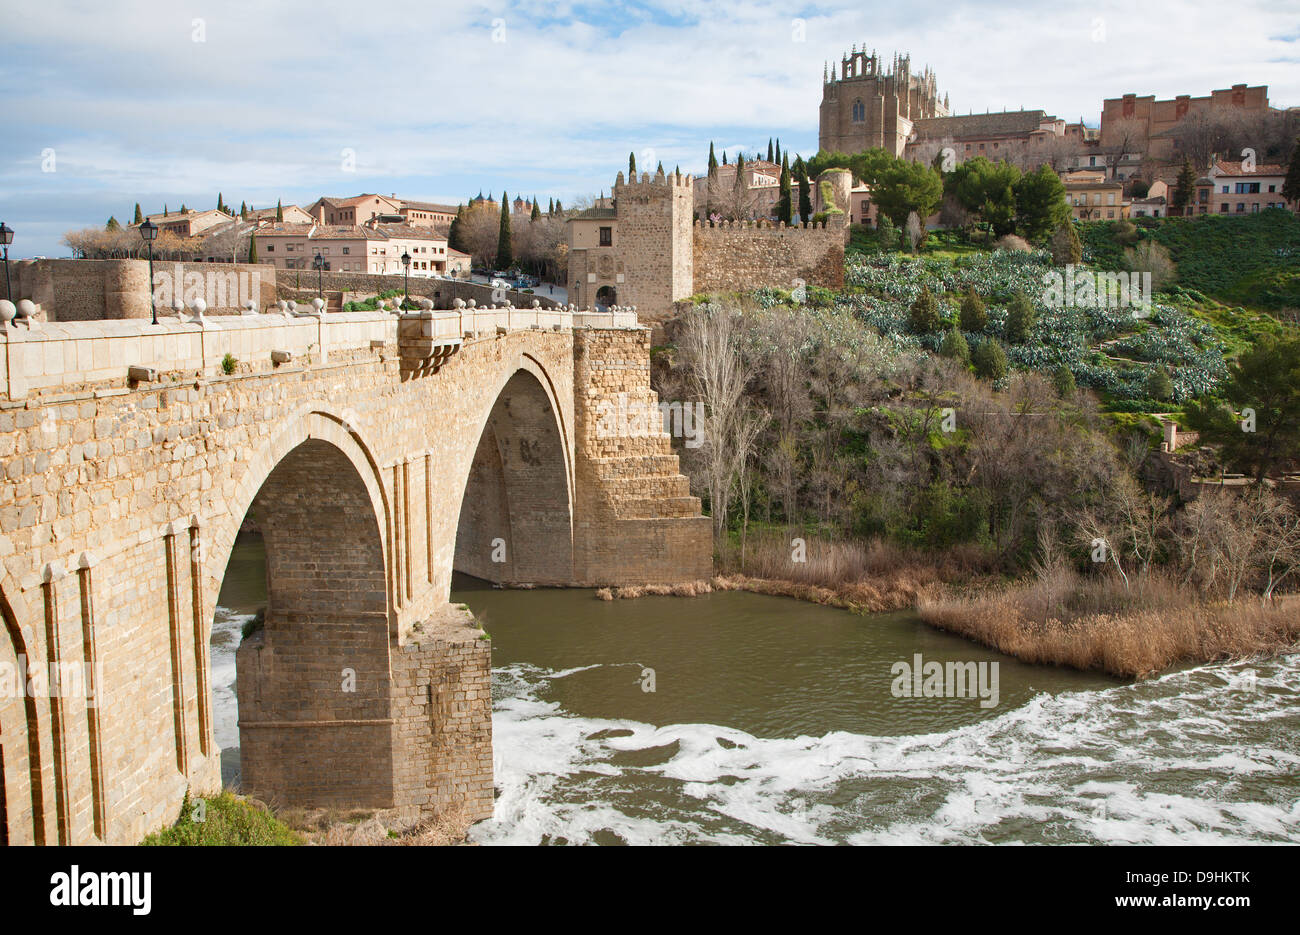 Toledo - Regarder vers San Martin s'épouse ou pont de San Martin au monastère de saint Jean de la Roi dans la lumière du matin Banque D'Images